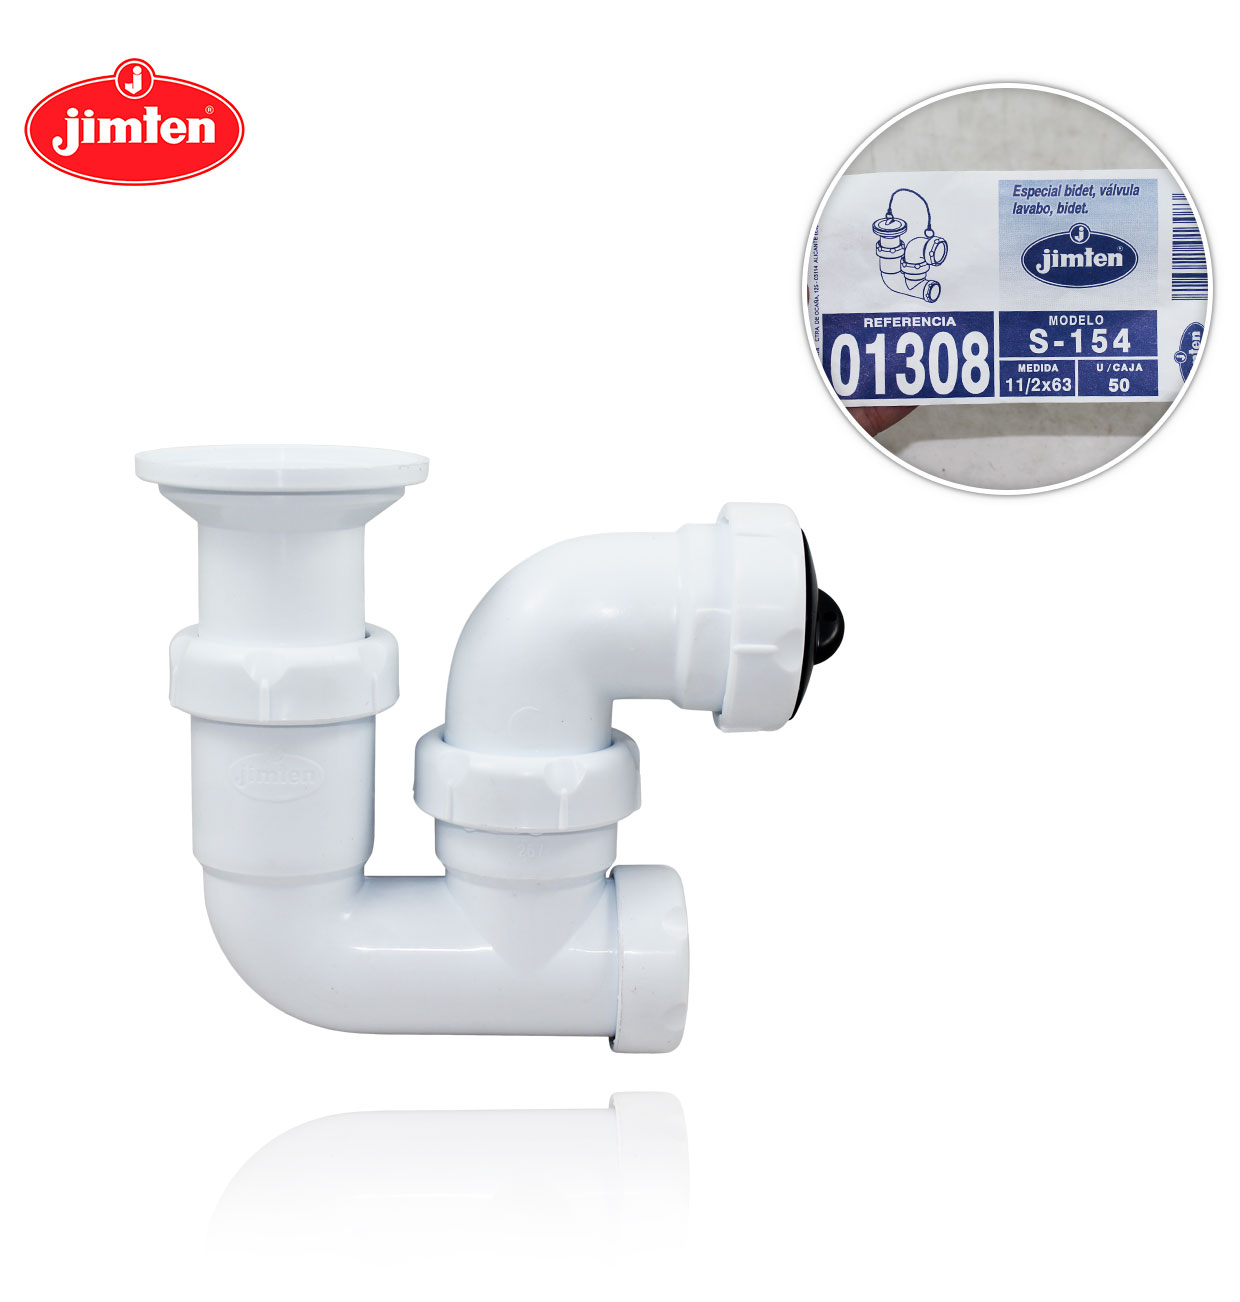 BIDET SPECIAL TRAP 11/2x63  with sink-bidet valve